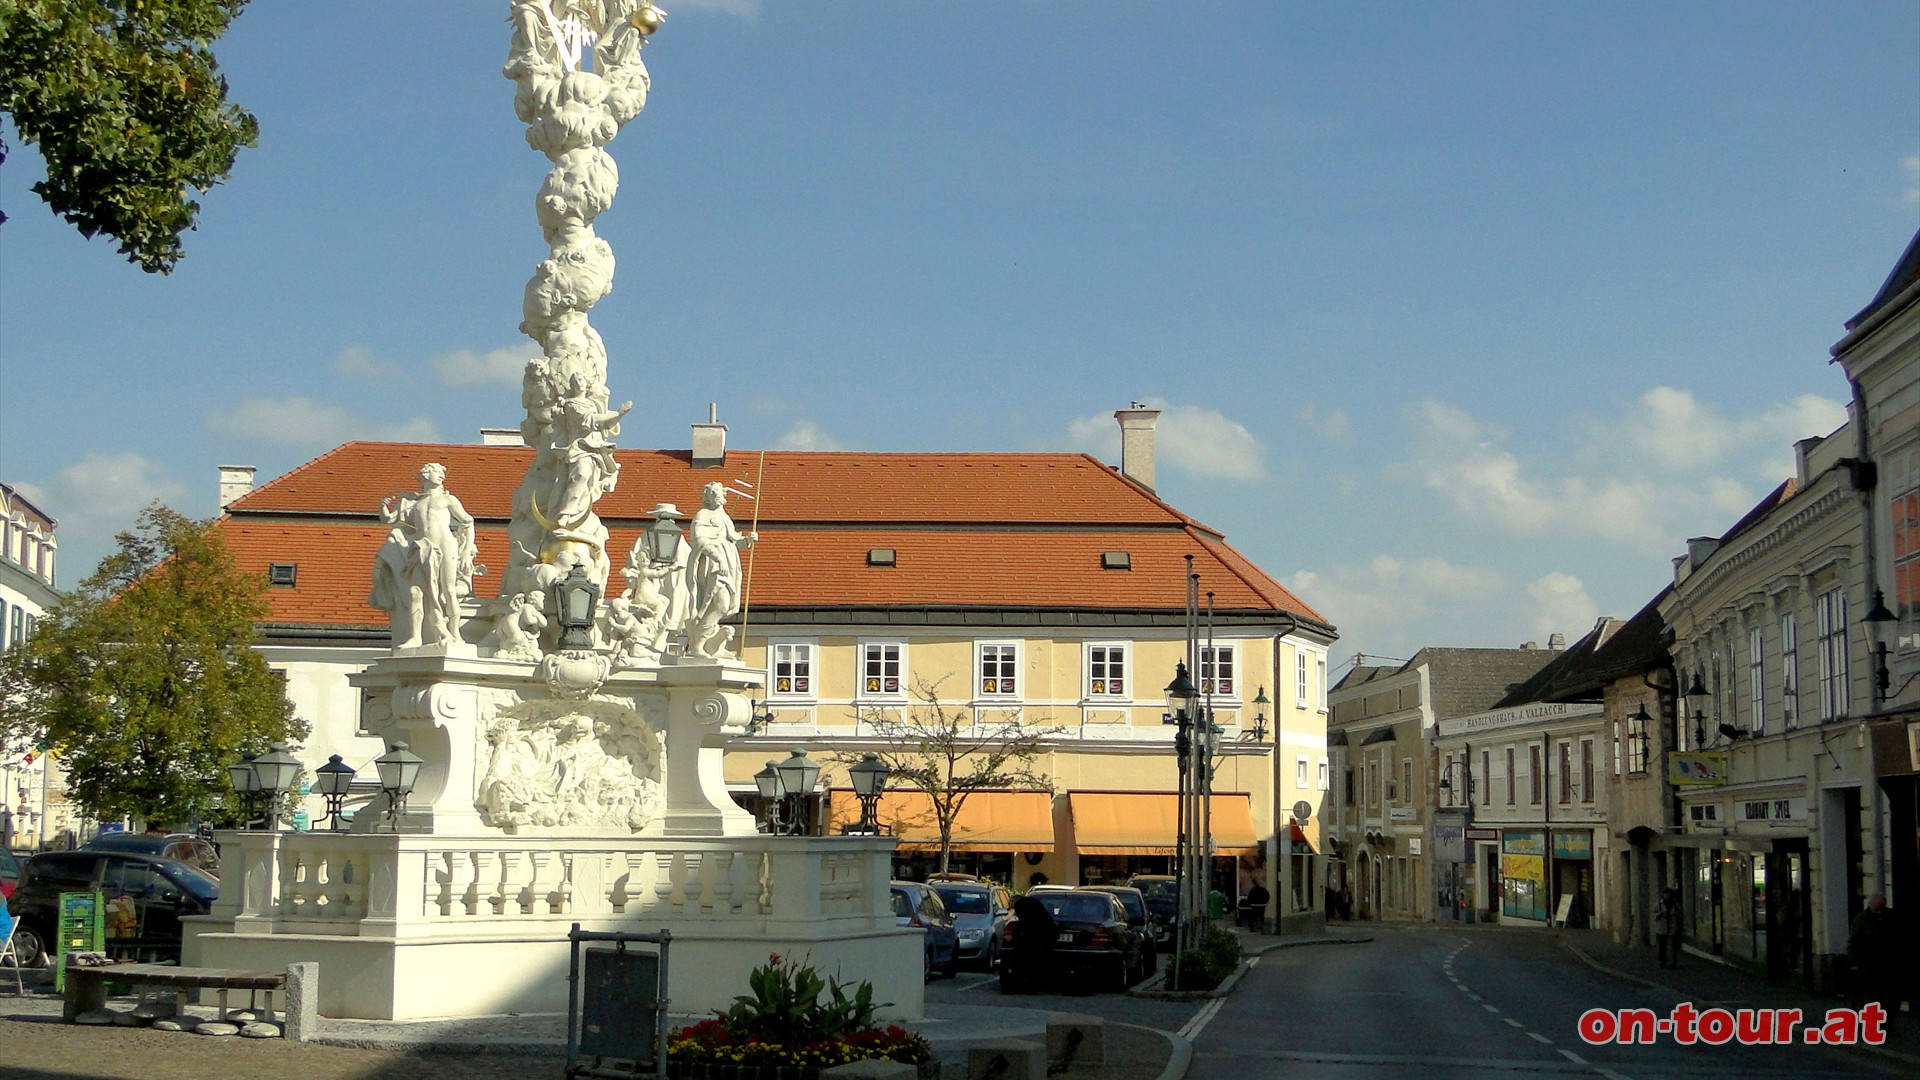 Am Freiheitsplatz, mit der barocken Dreifaltigkeitssule, beginnt unser Stadtrundgang.